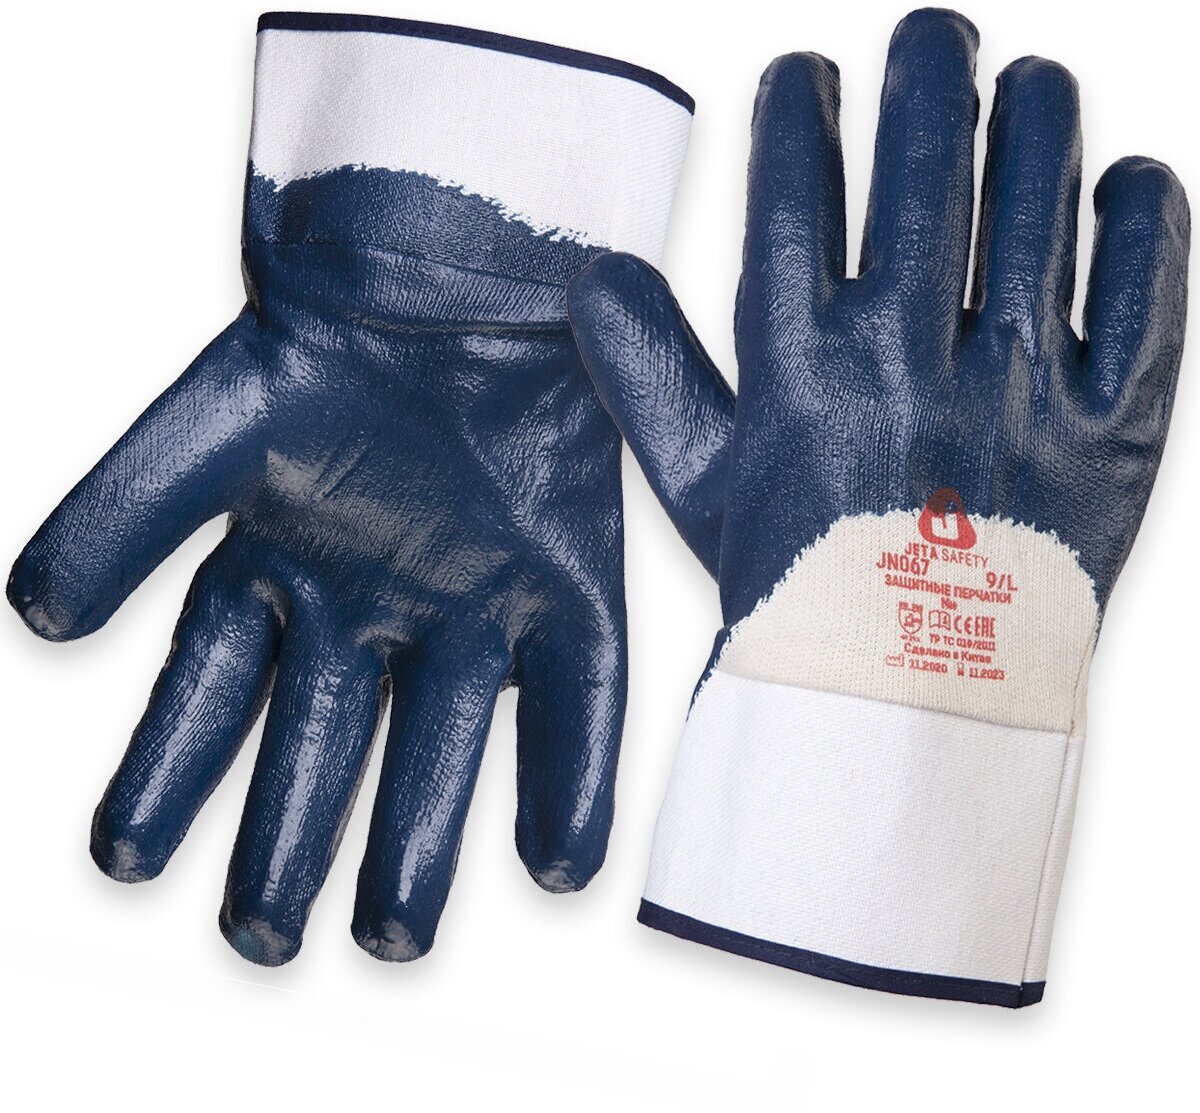 Химически стойкие рабочие перчатки Jeta Safety JN067 с нитриловым покрытием, размер L, - 1 пара